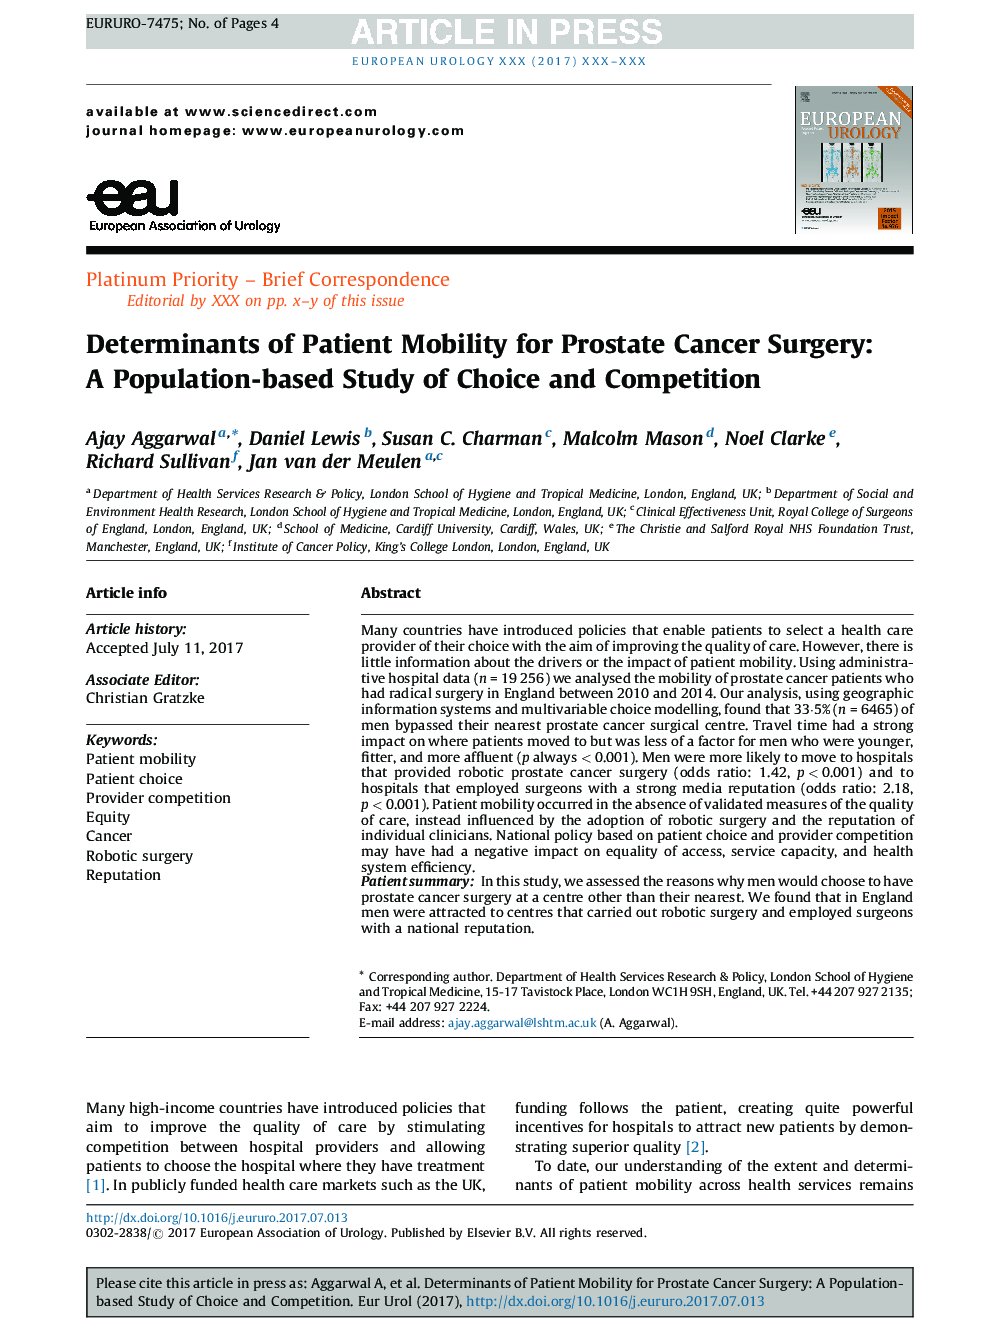 عوامل تعیین کننده تحرک بیمار برای جراحی سرطان پروستات: مطالعه مبتنی بر جمعیت انتخاب و رقابت 